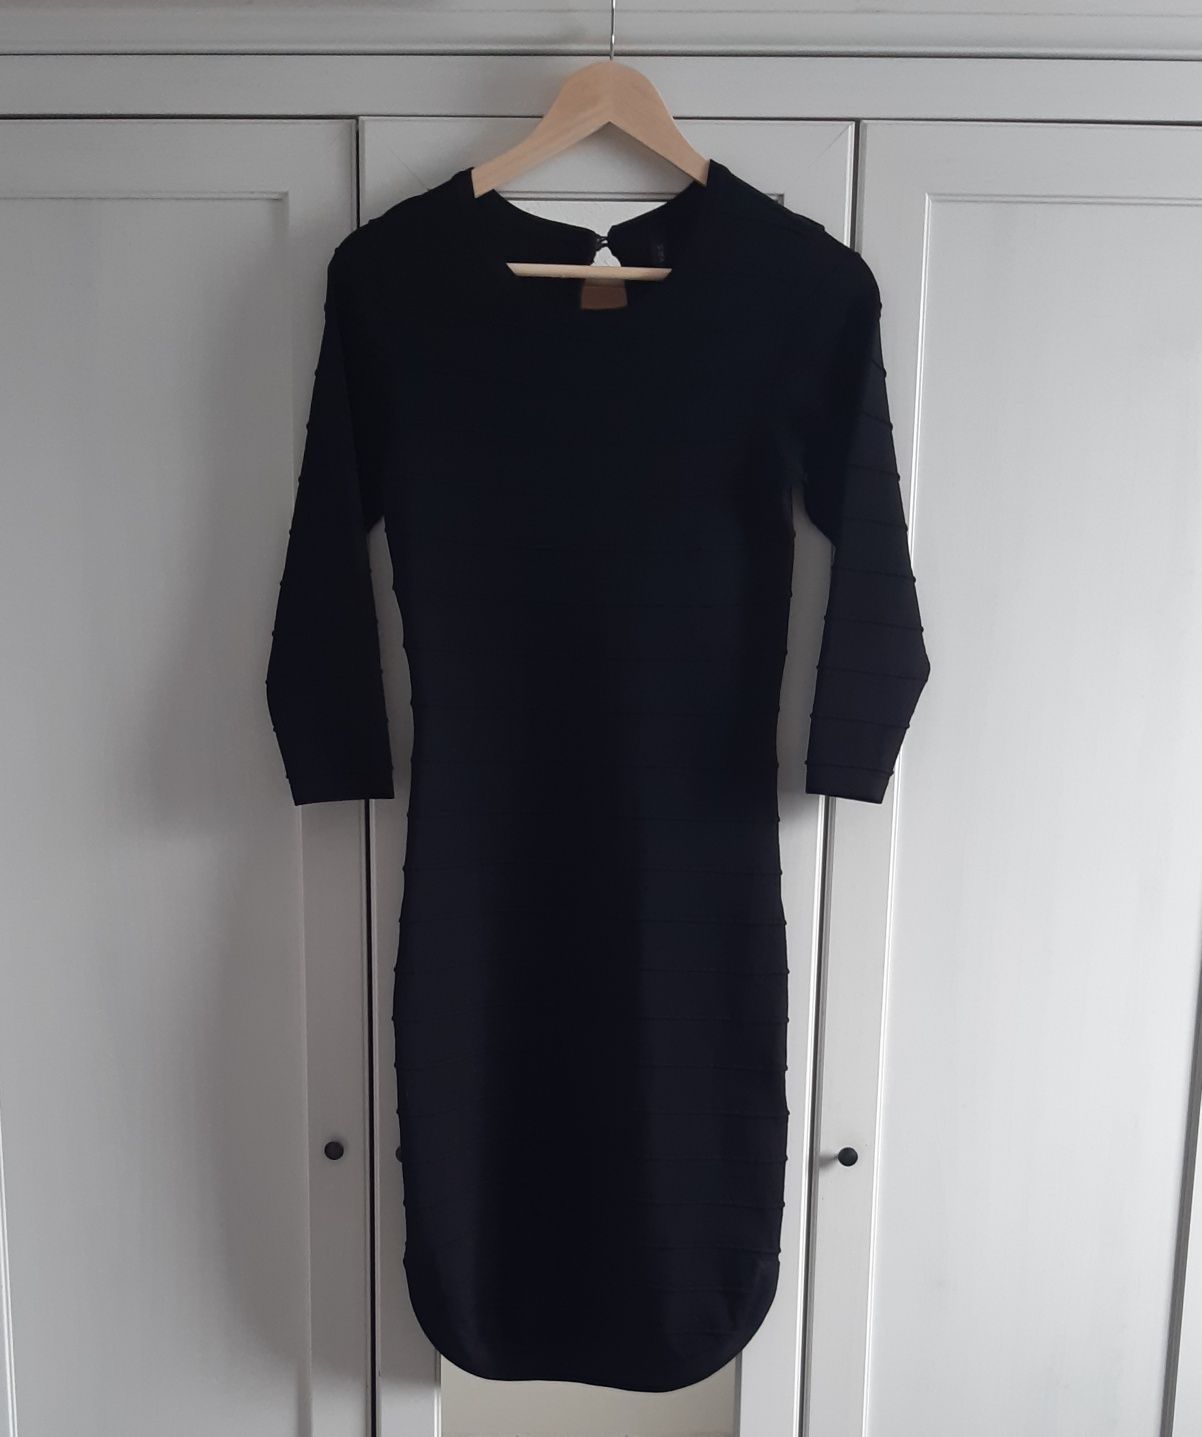 Elegancka intensywnie czarna sukienka, 65%wiskoza, YAS, rozmiar S / 36